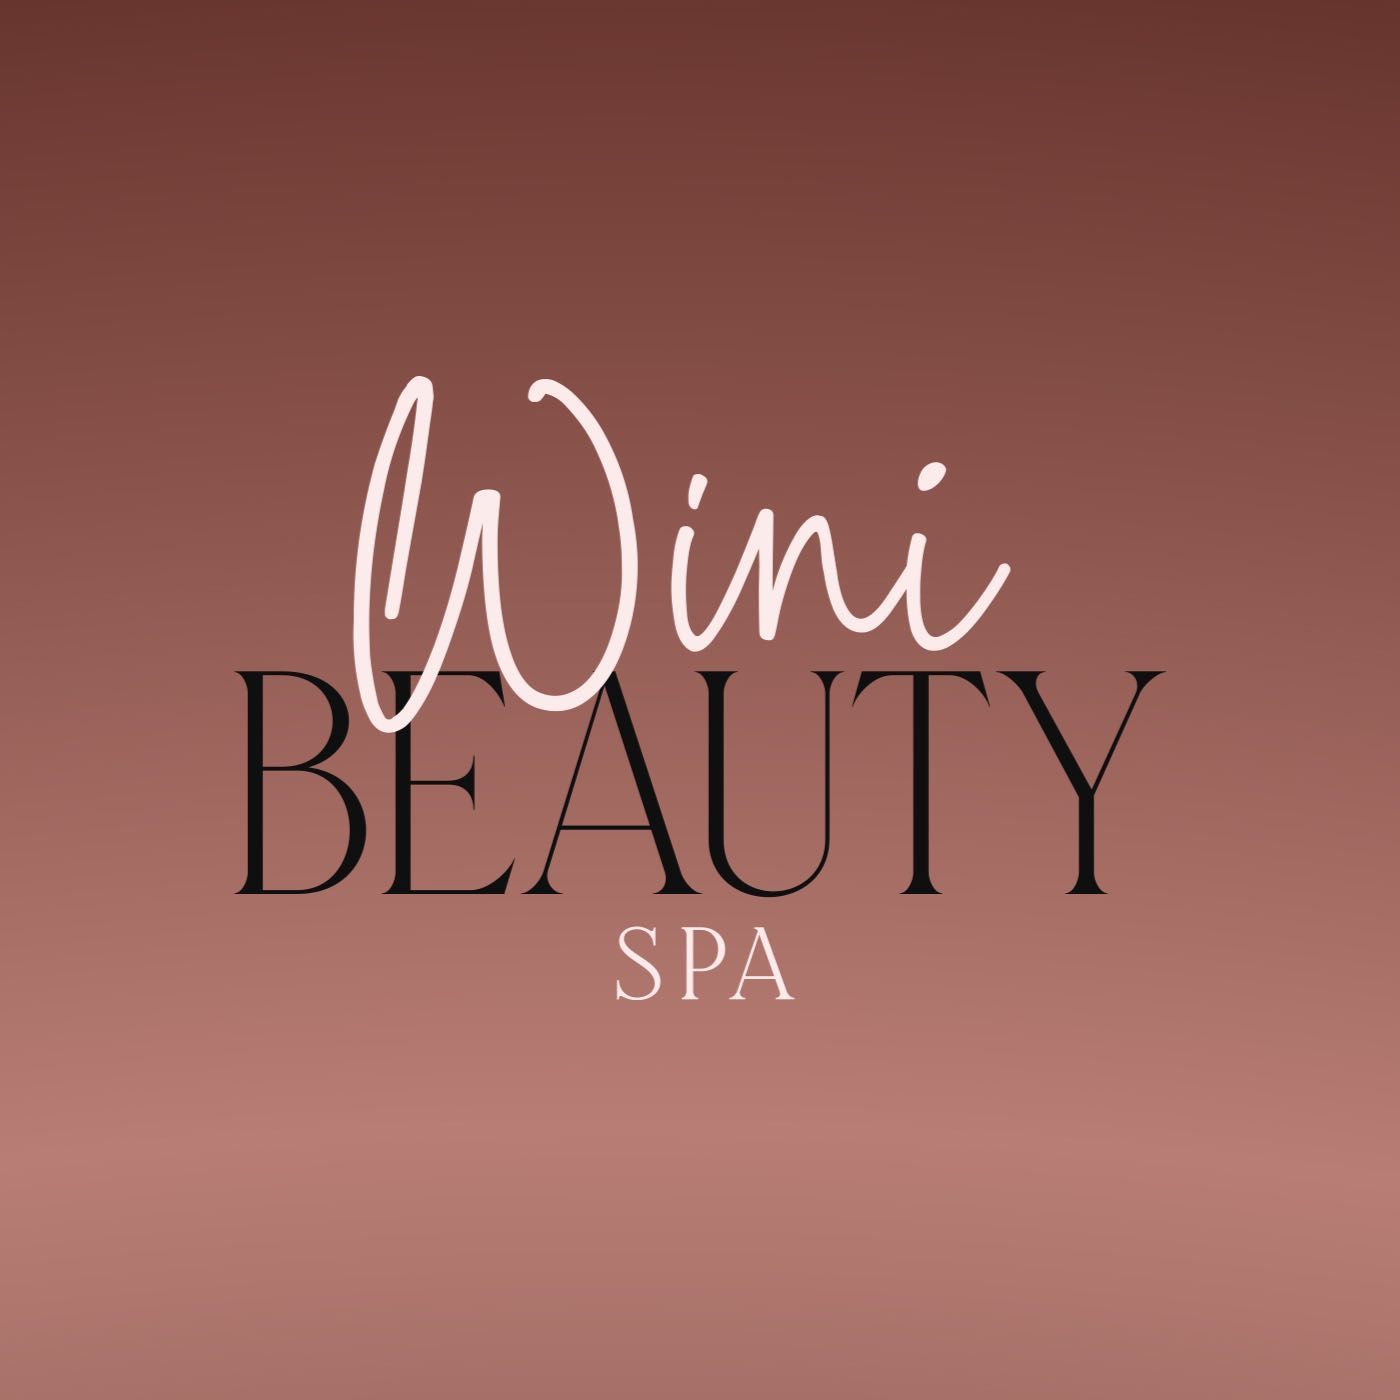 Wini Beauty Spa, Al reservar la cita, 5771 curry ford rd, Orlando, 32822